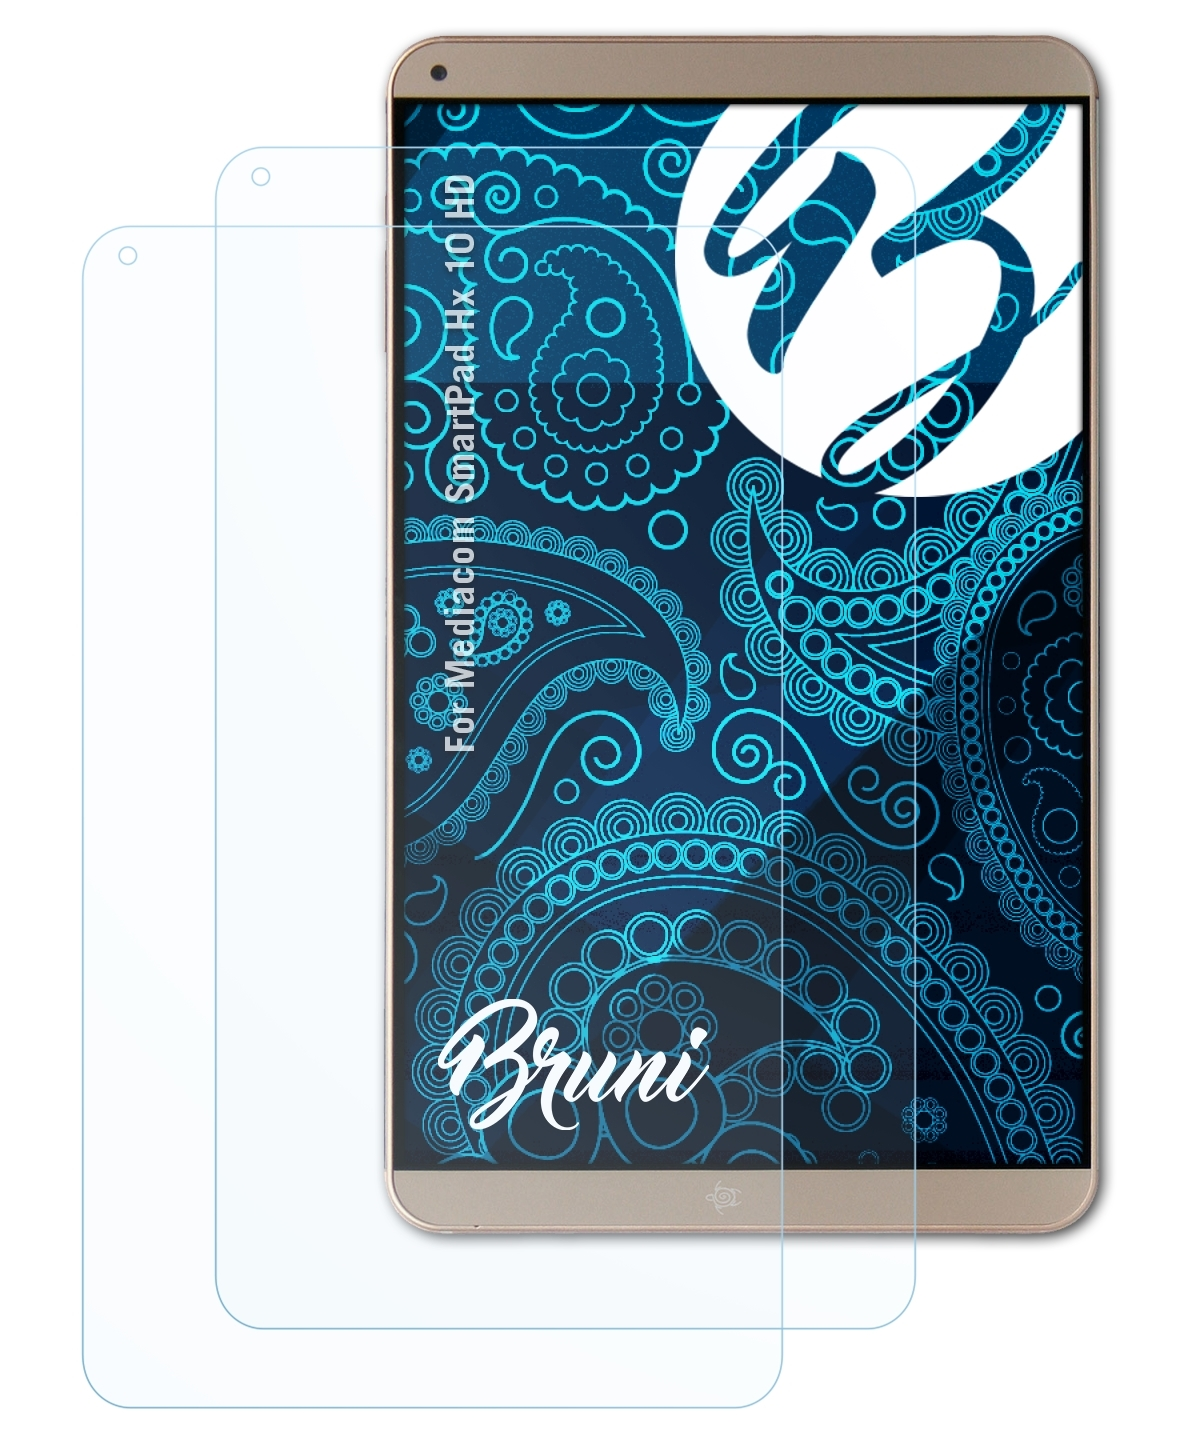 BRUNI 2x HD) 10 Basics-Clear Hx SmartPad Schutzfolie(für Mediacom